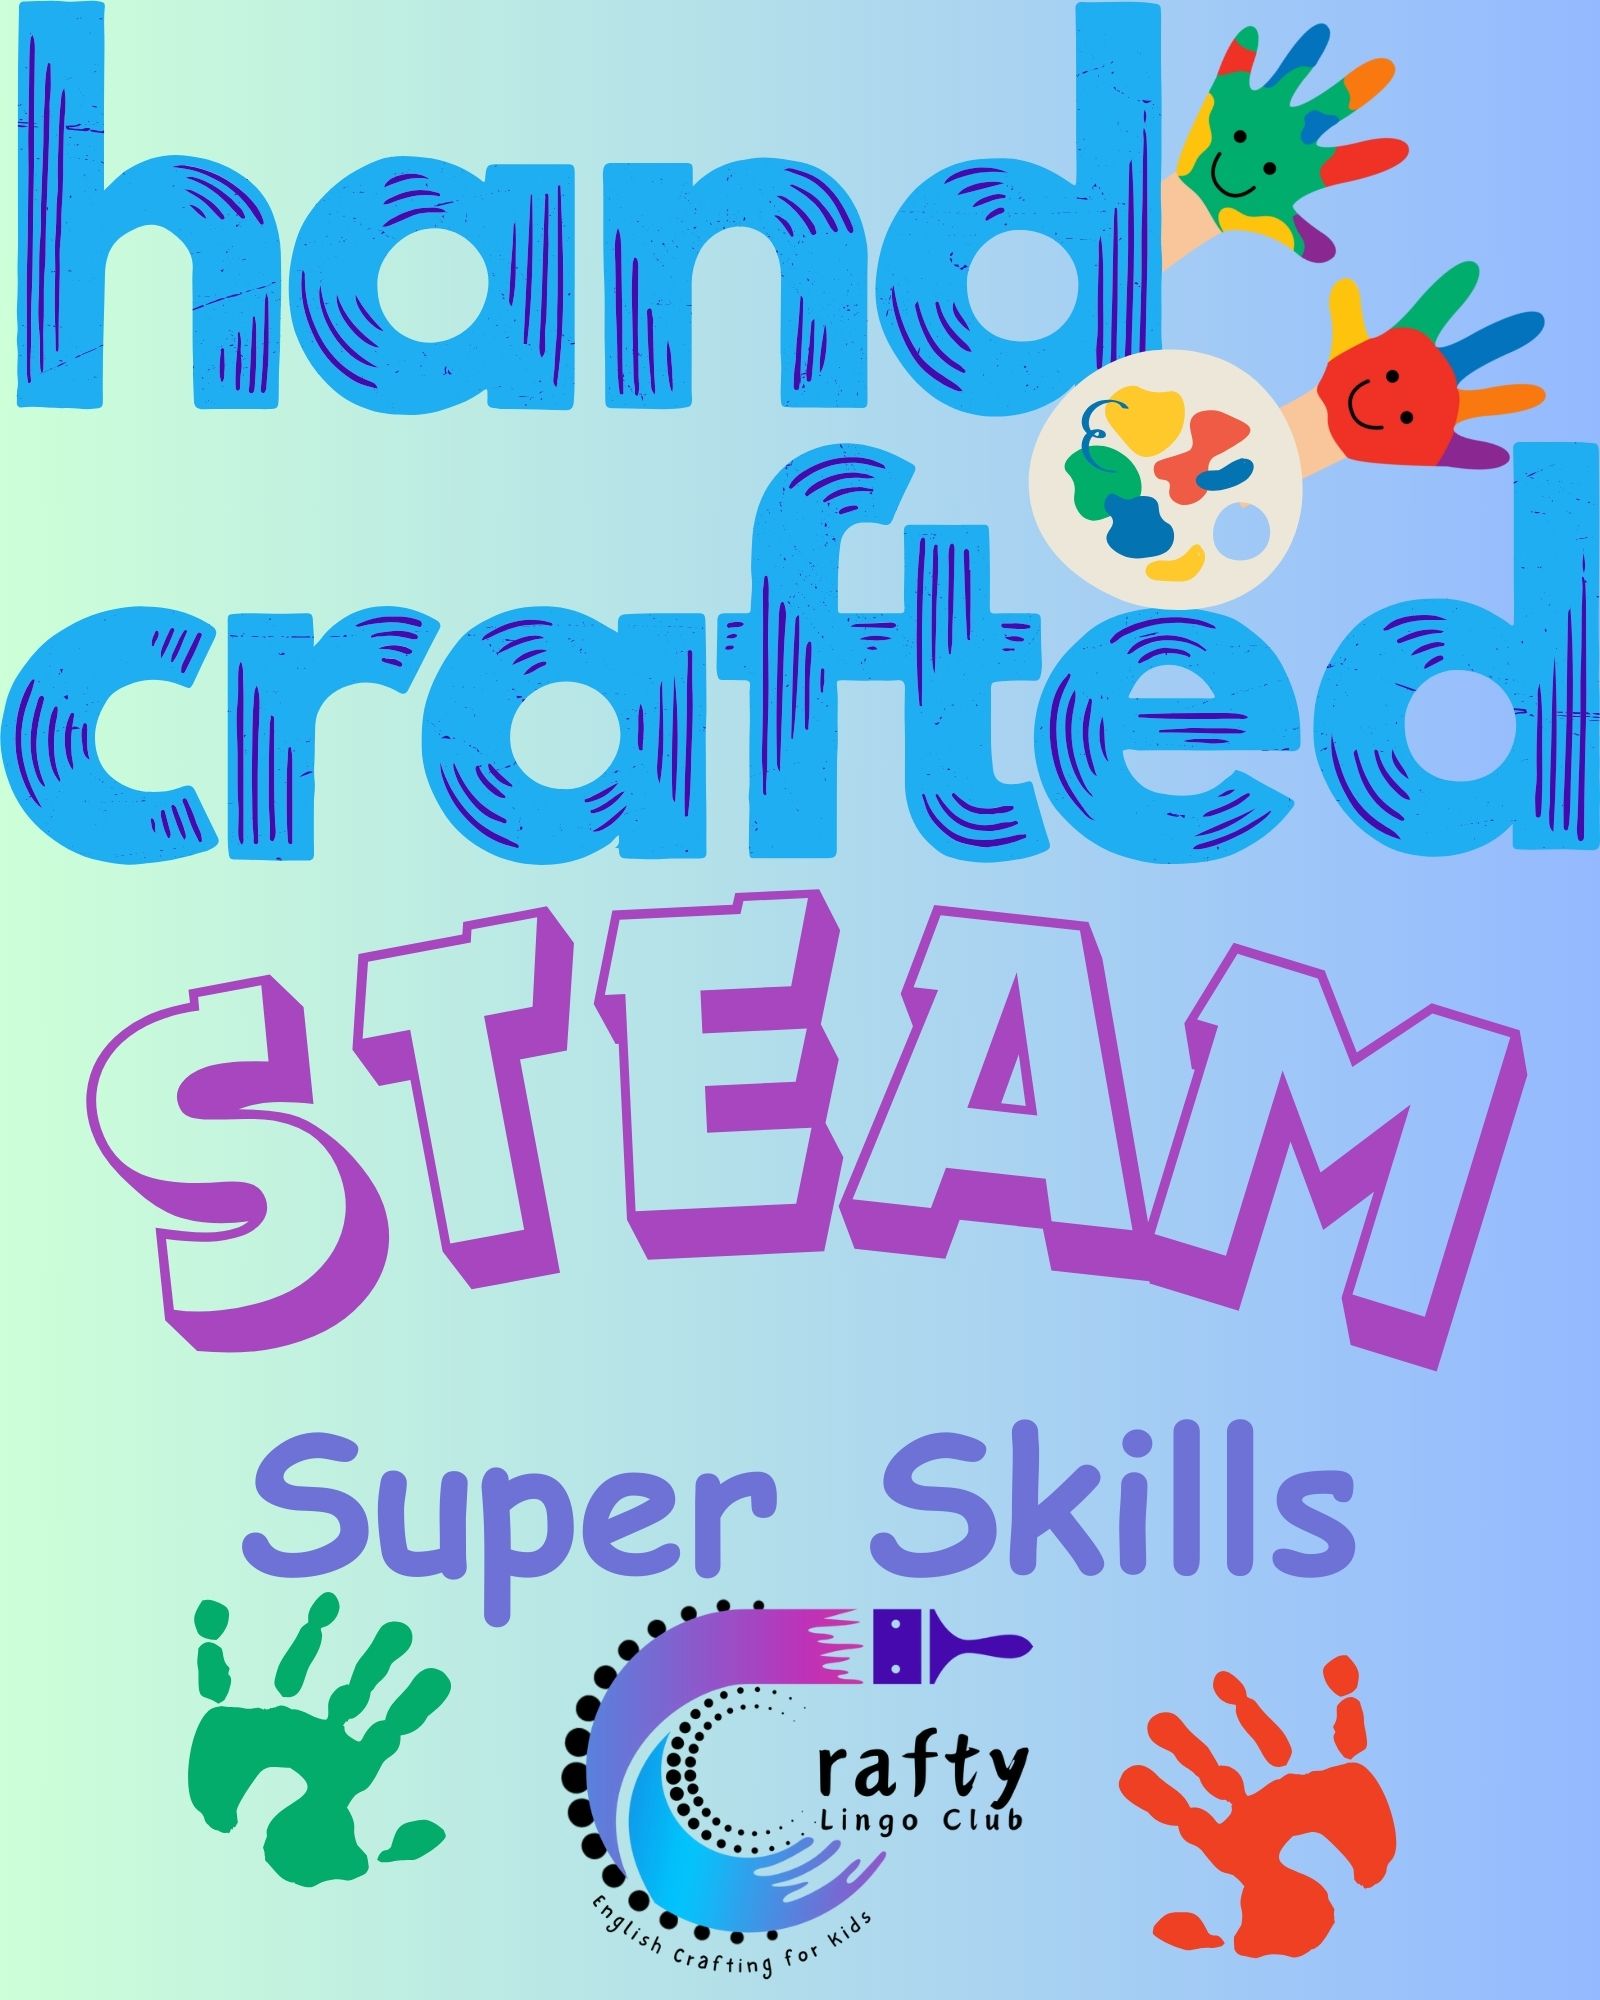 Hand crafted, STEAM Super Skills, Crafty Lingo Club